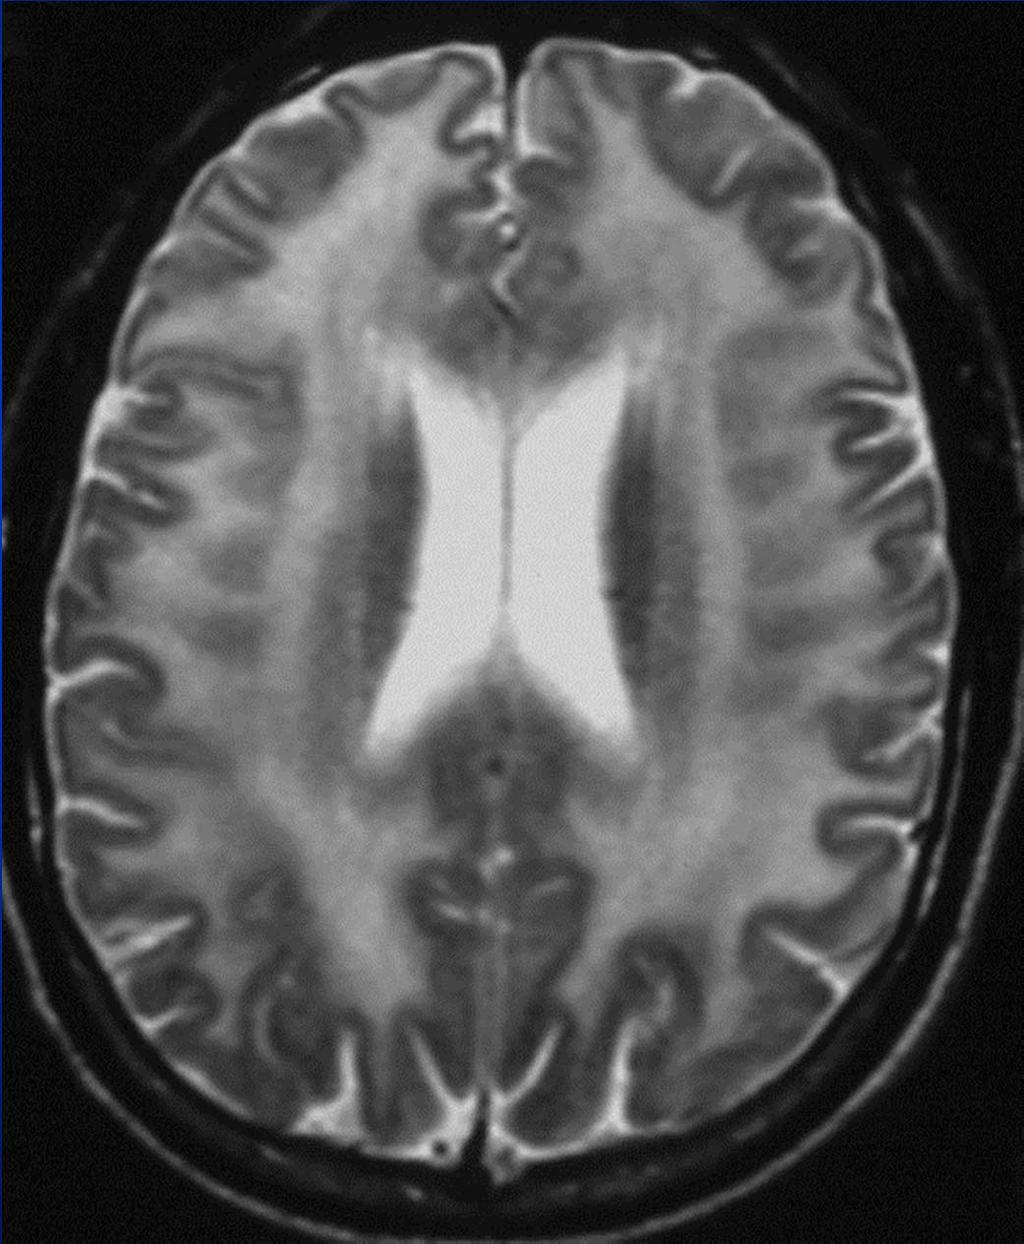 MRI: Diffuse